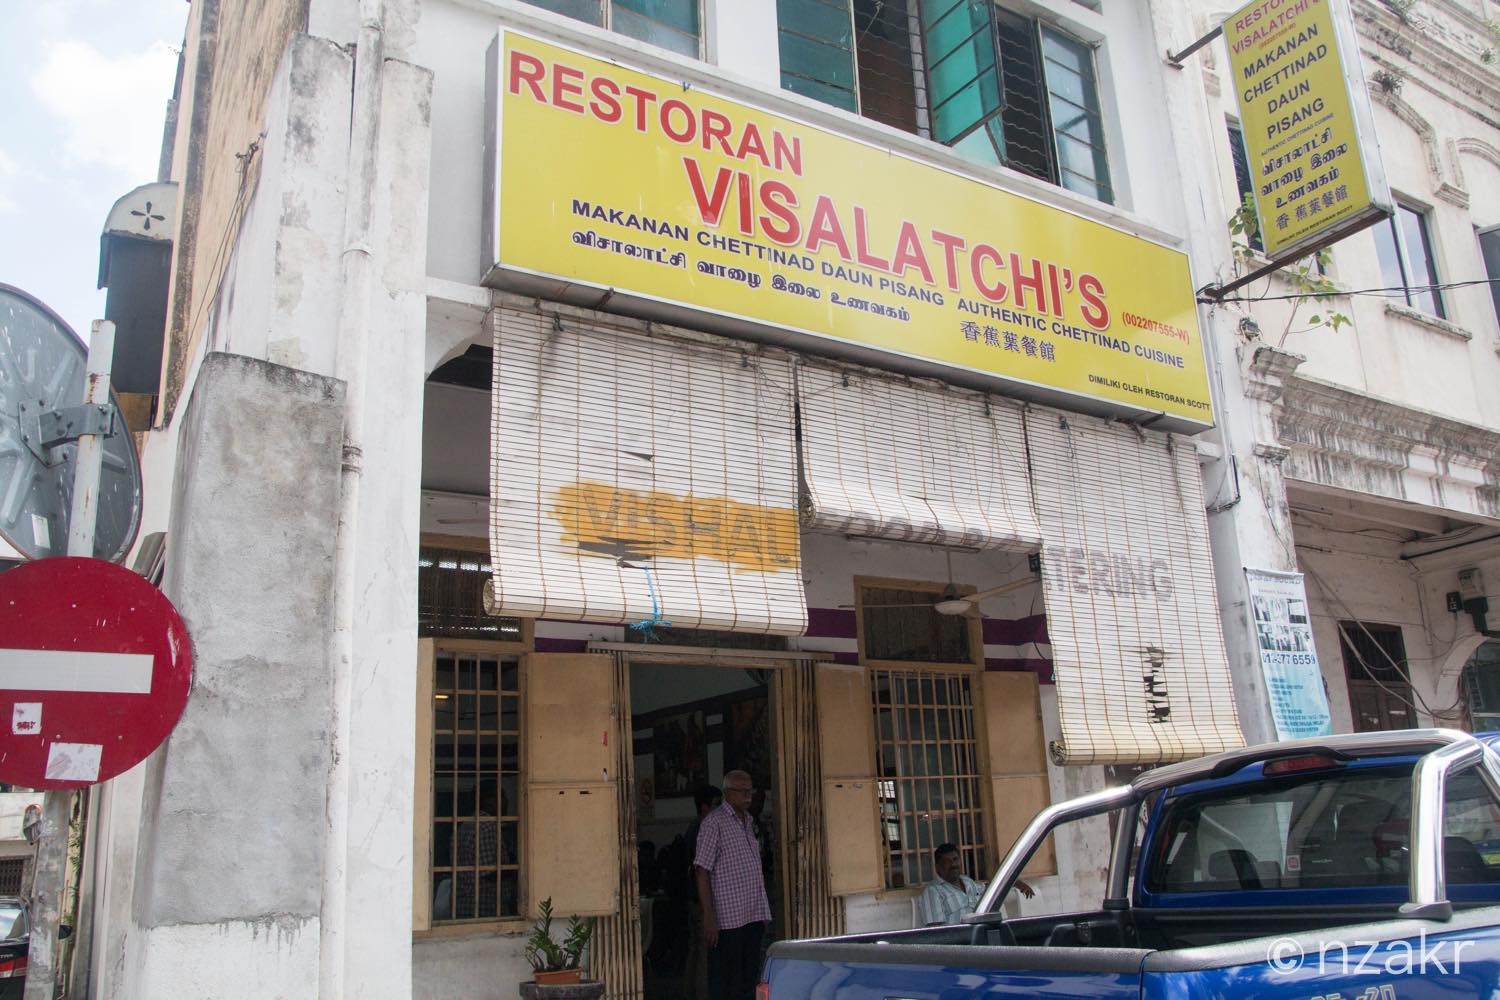 インド人街のローカルレストラン Visalatchi